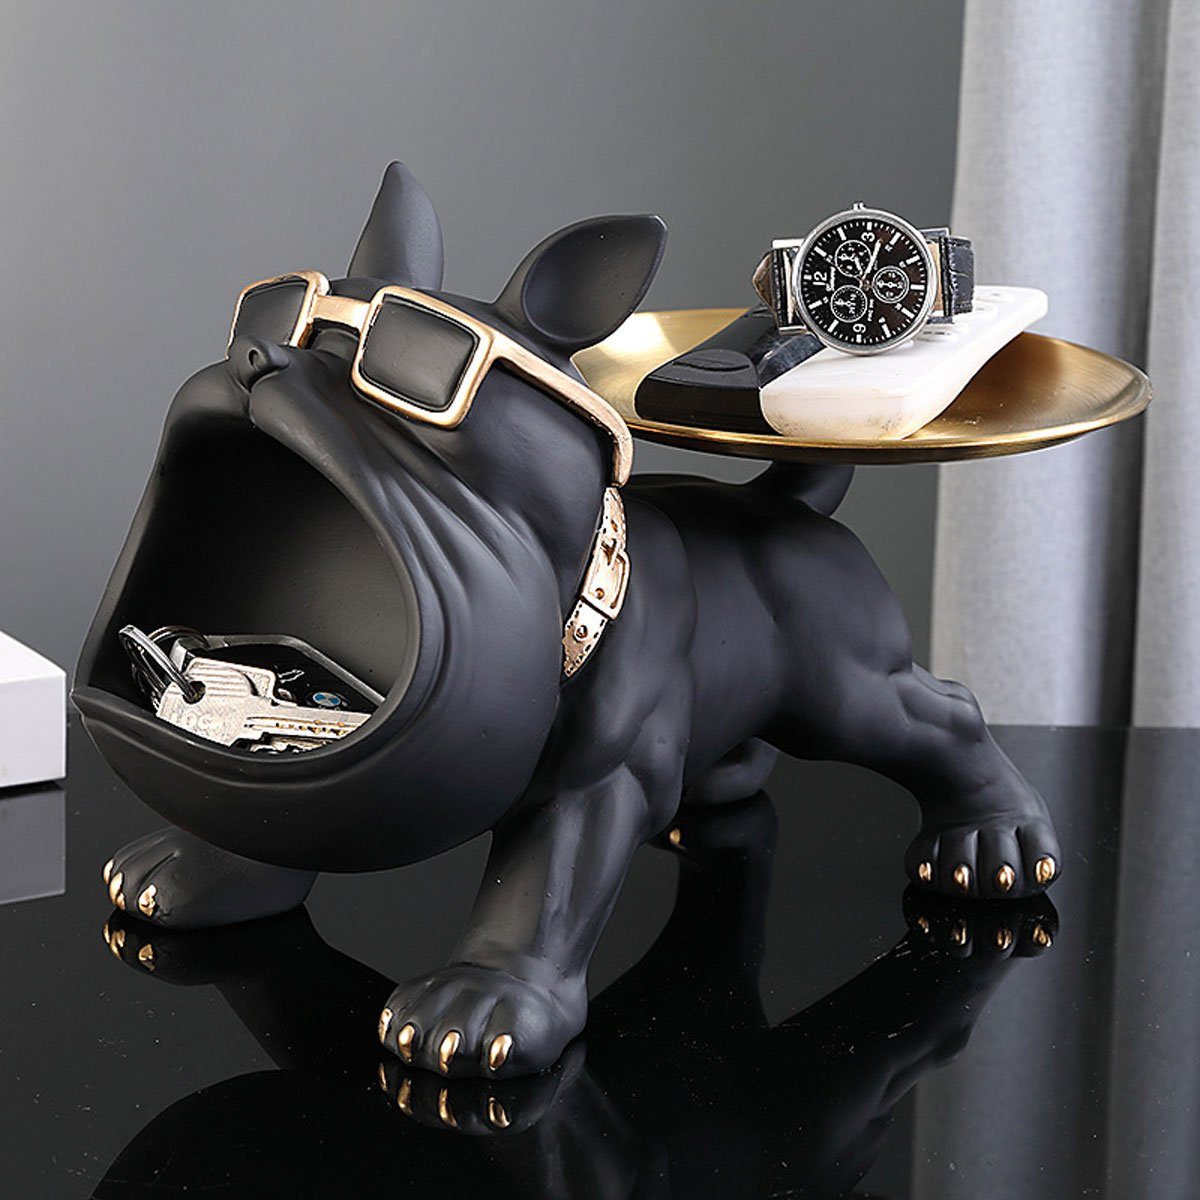 Kopf einer Französischen Bulldogge. Deko-Objekt aus Edelstahl mit